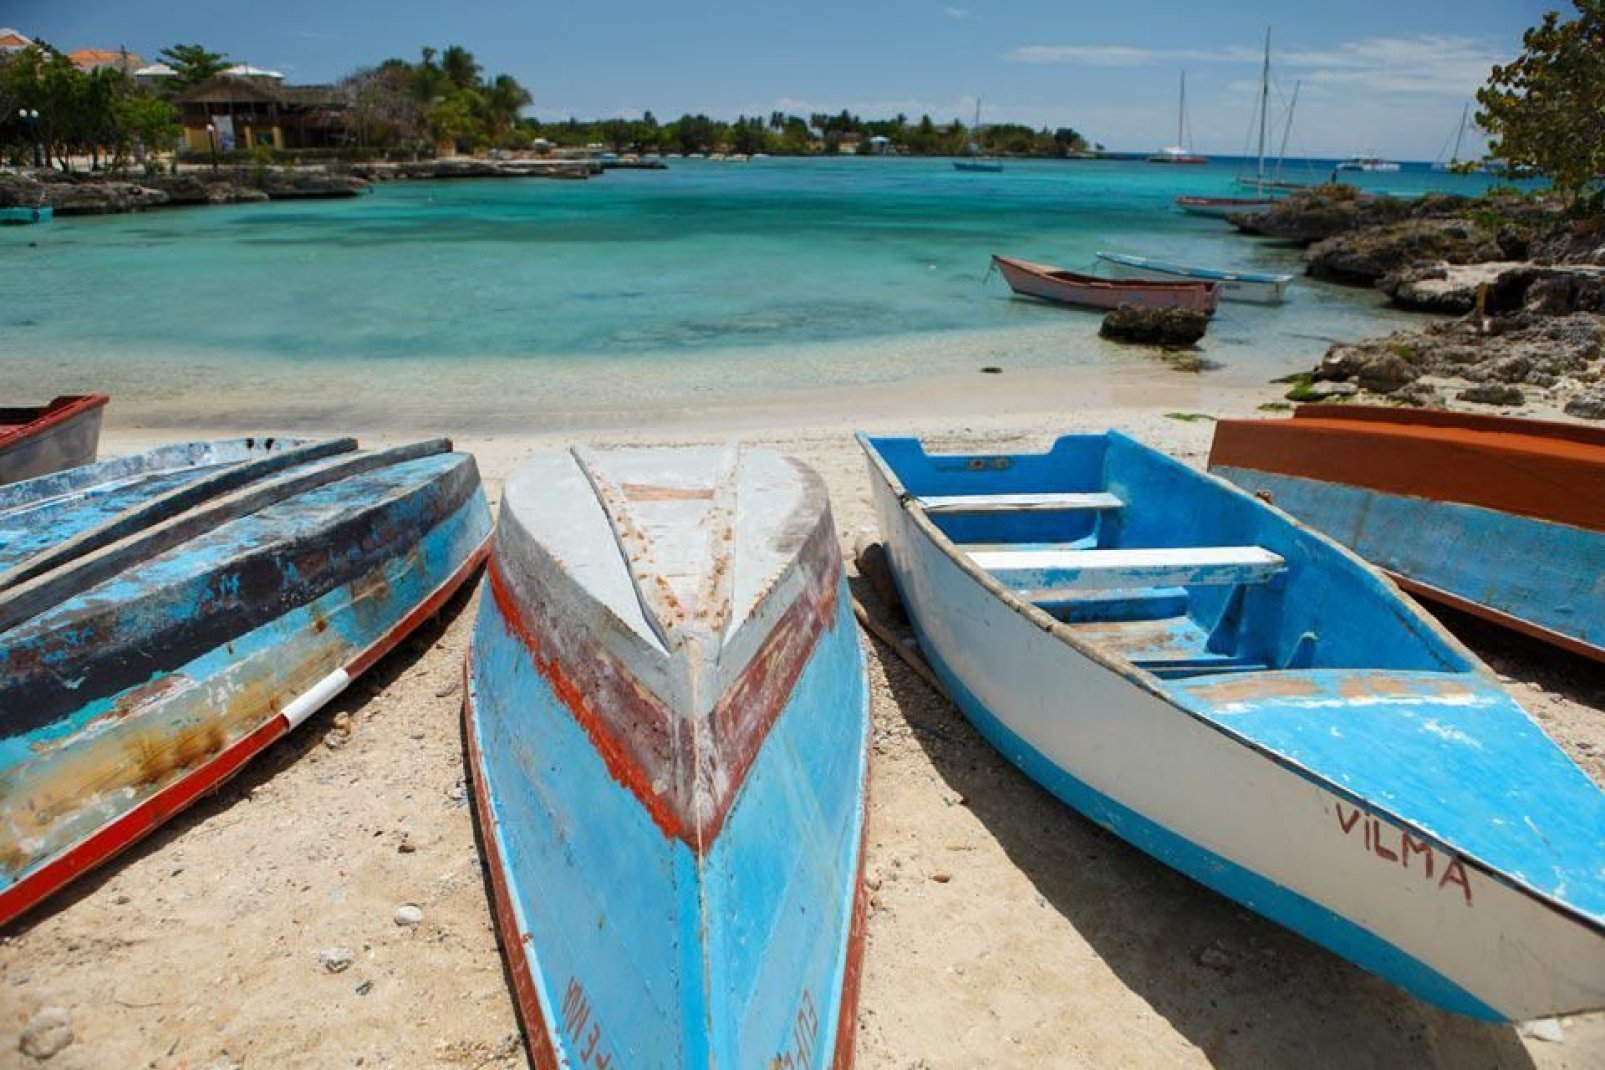 Fiancheggiata da palme, la spiaggia principale del piccolo villaggio di pescatori Bayahibe, una cintura di sabbia che si estende per oltre 2 chilometri, è una meraviglia.